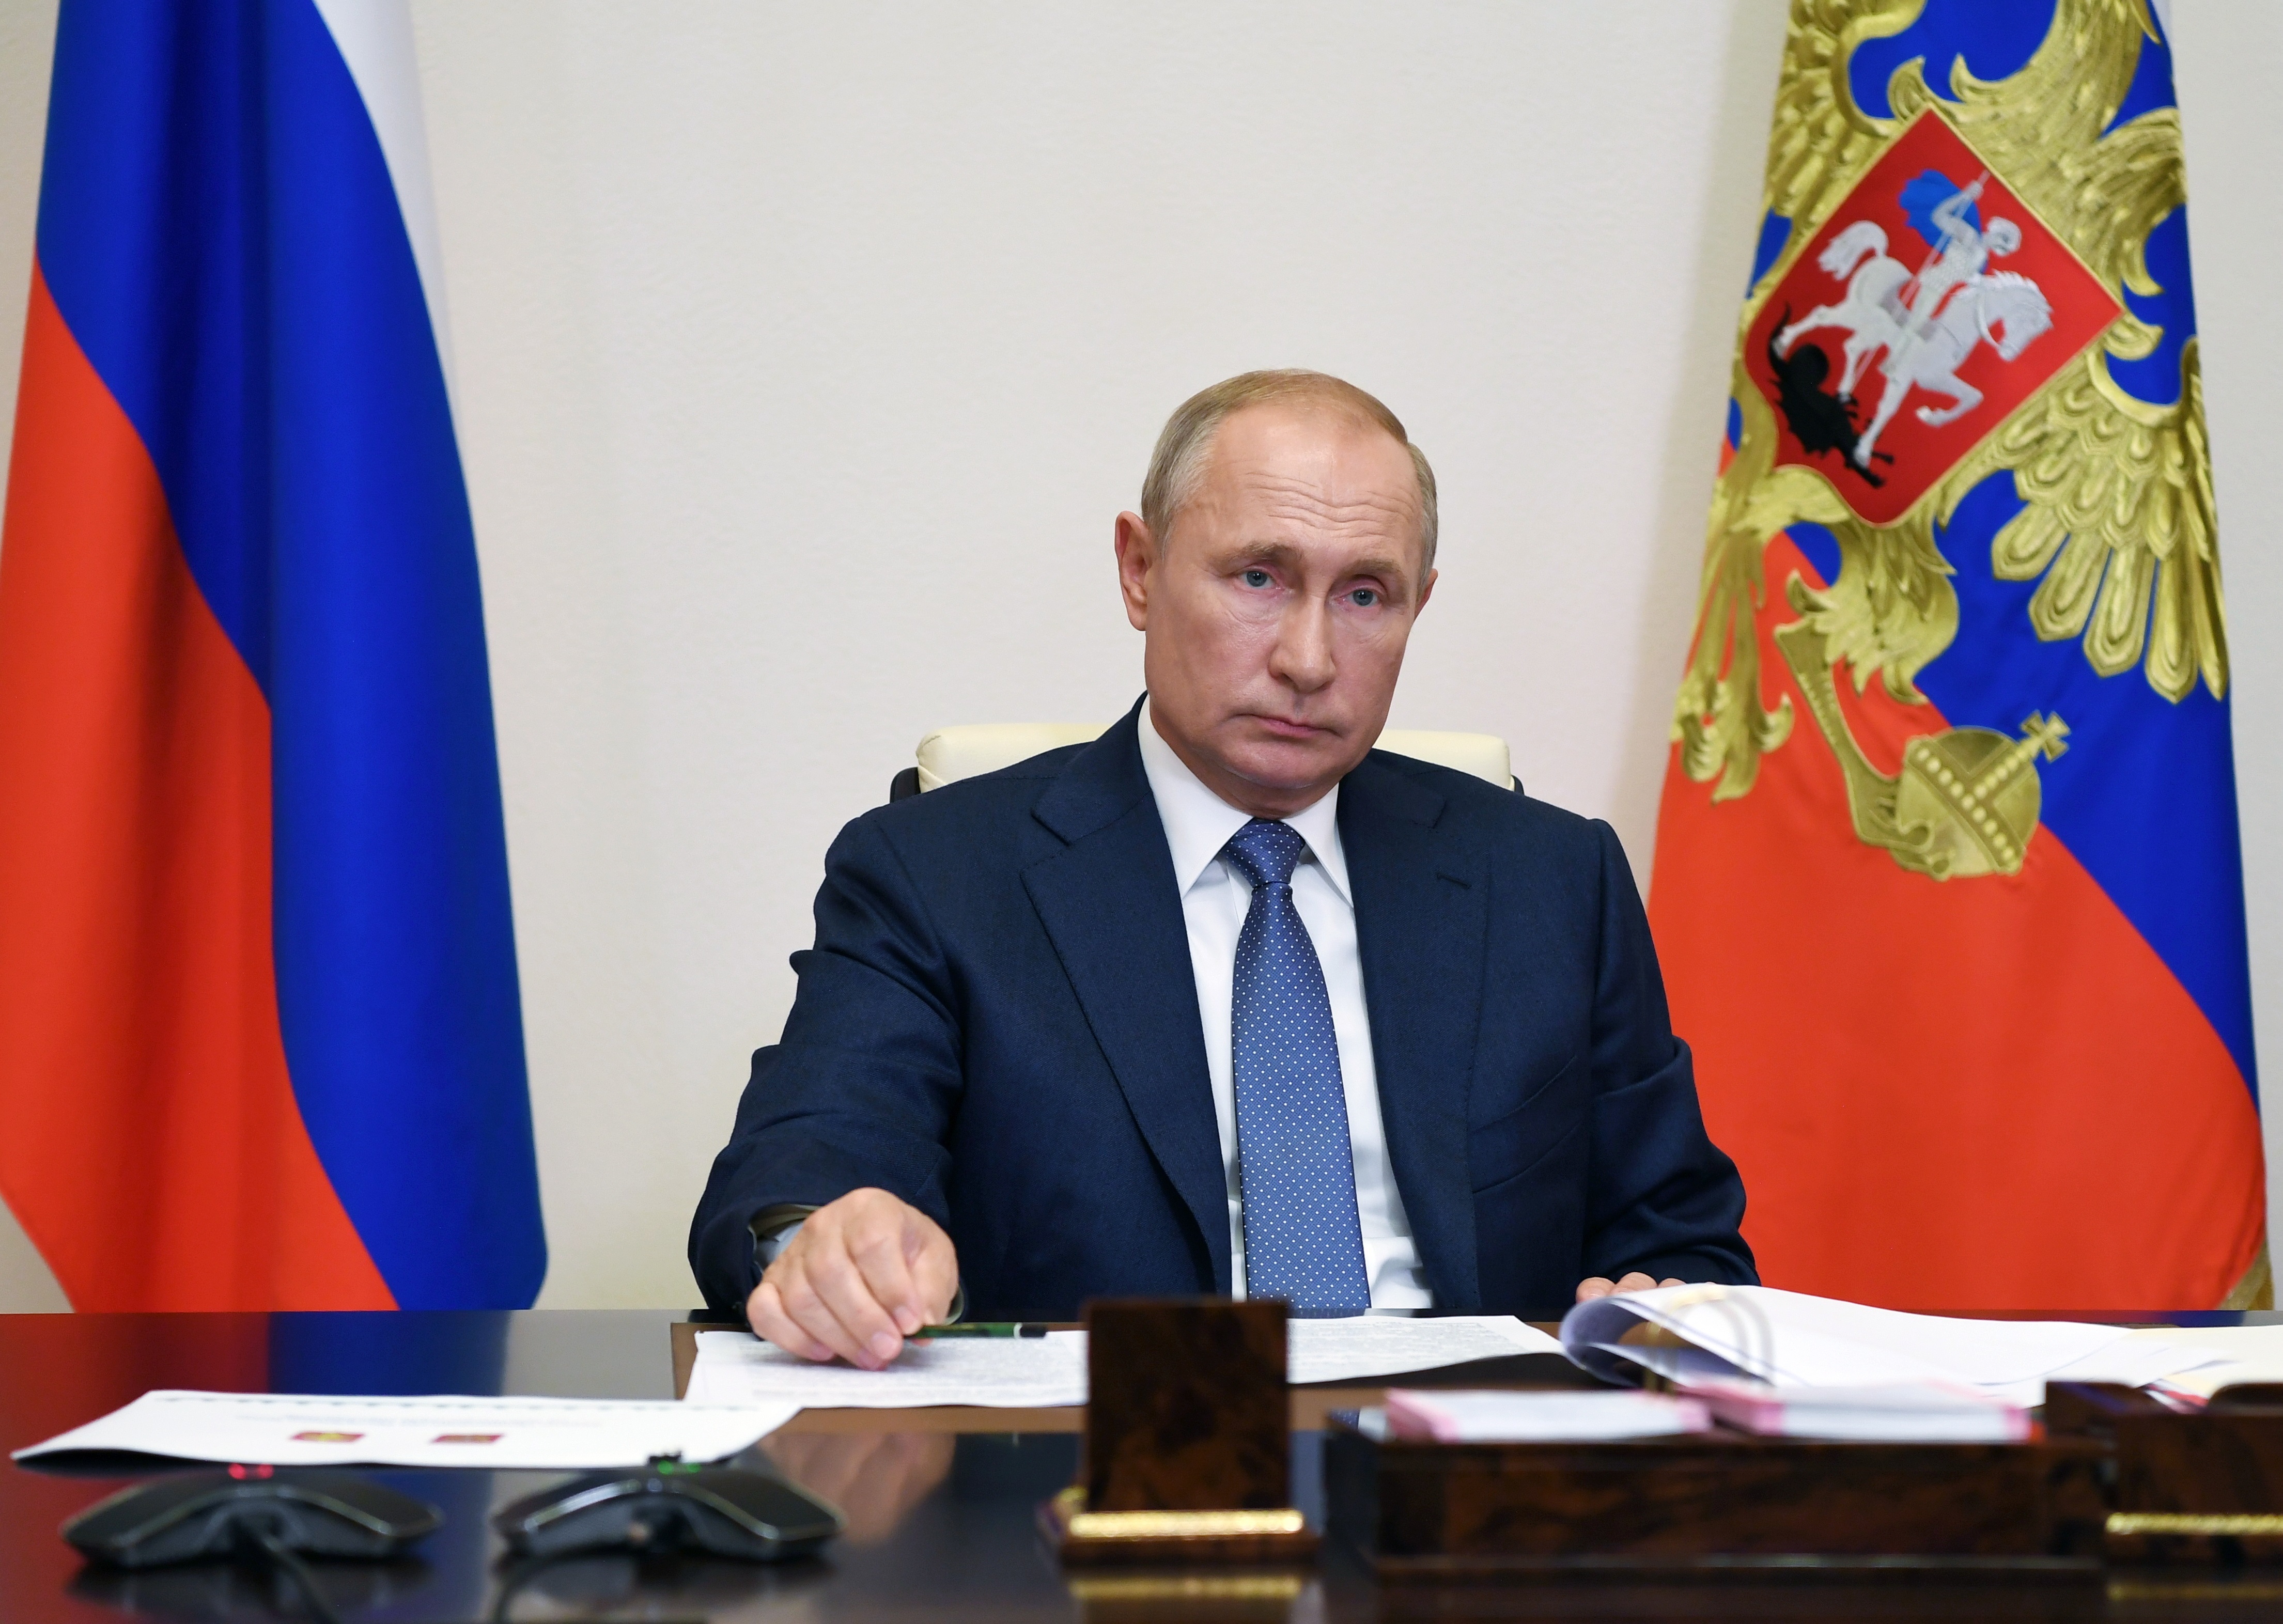 El presidente de Rusia, Vladimir Putin.
EFE/EPA/MIKHAIL KLIMENTYEV / RIA NOVOSTI / KREMLIN POOL
